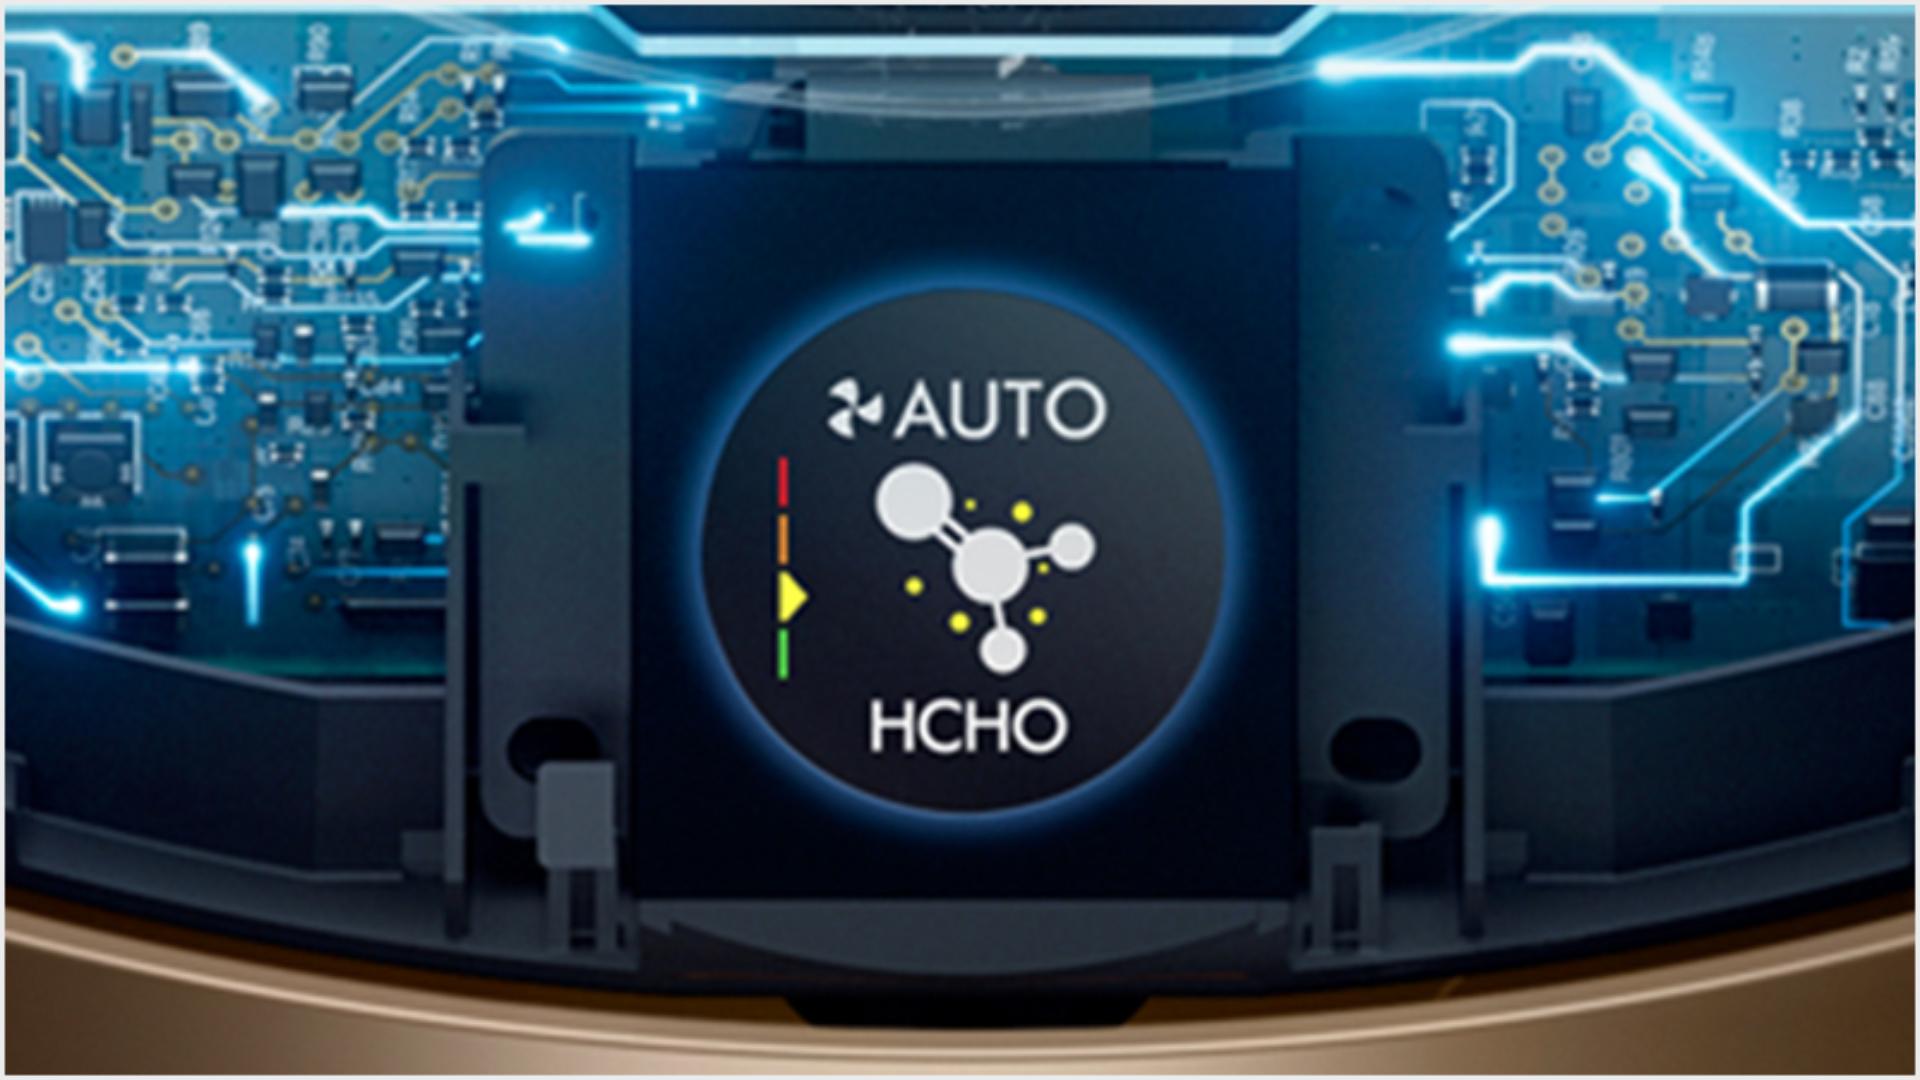 Wewnętrzna technologia wykrywania zanieczyszczeń i ekran LCD pokazujący jakość powietrza.